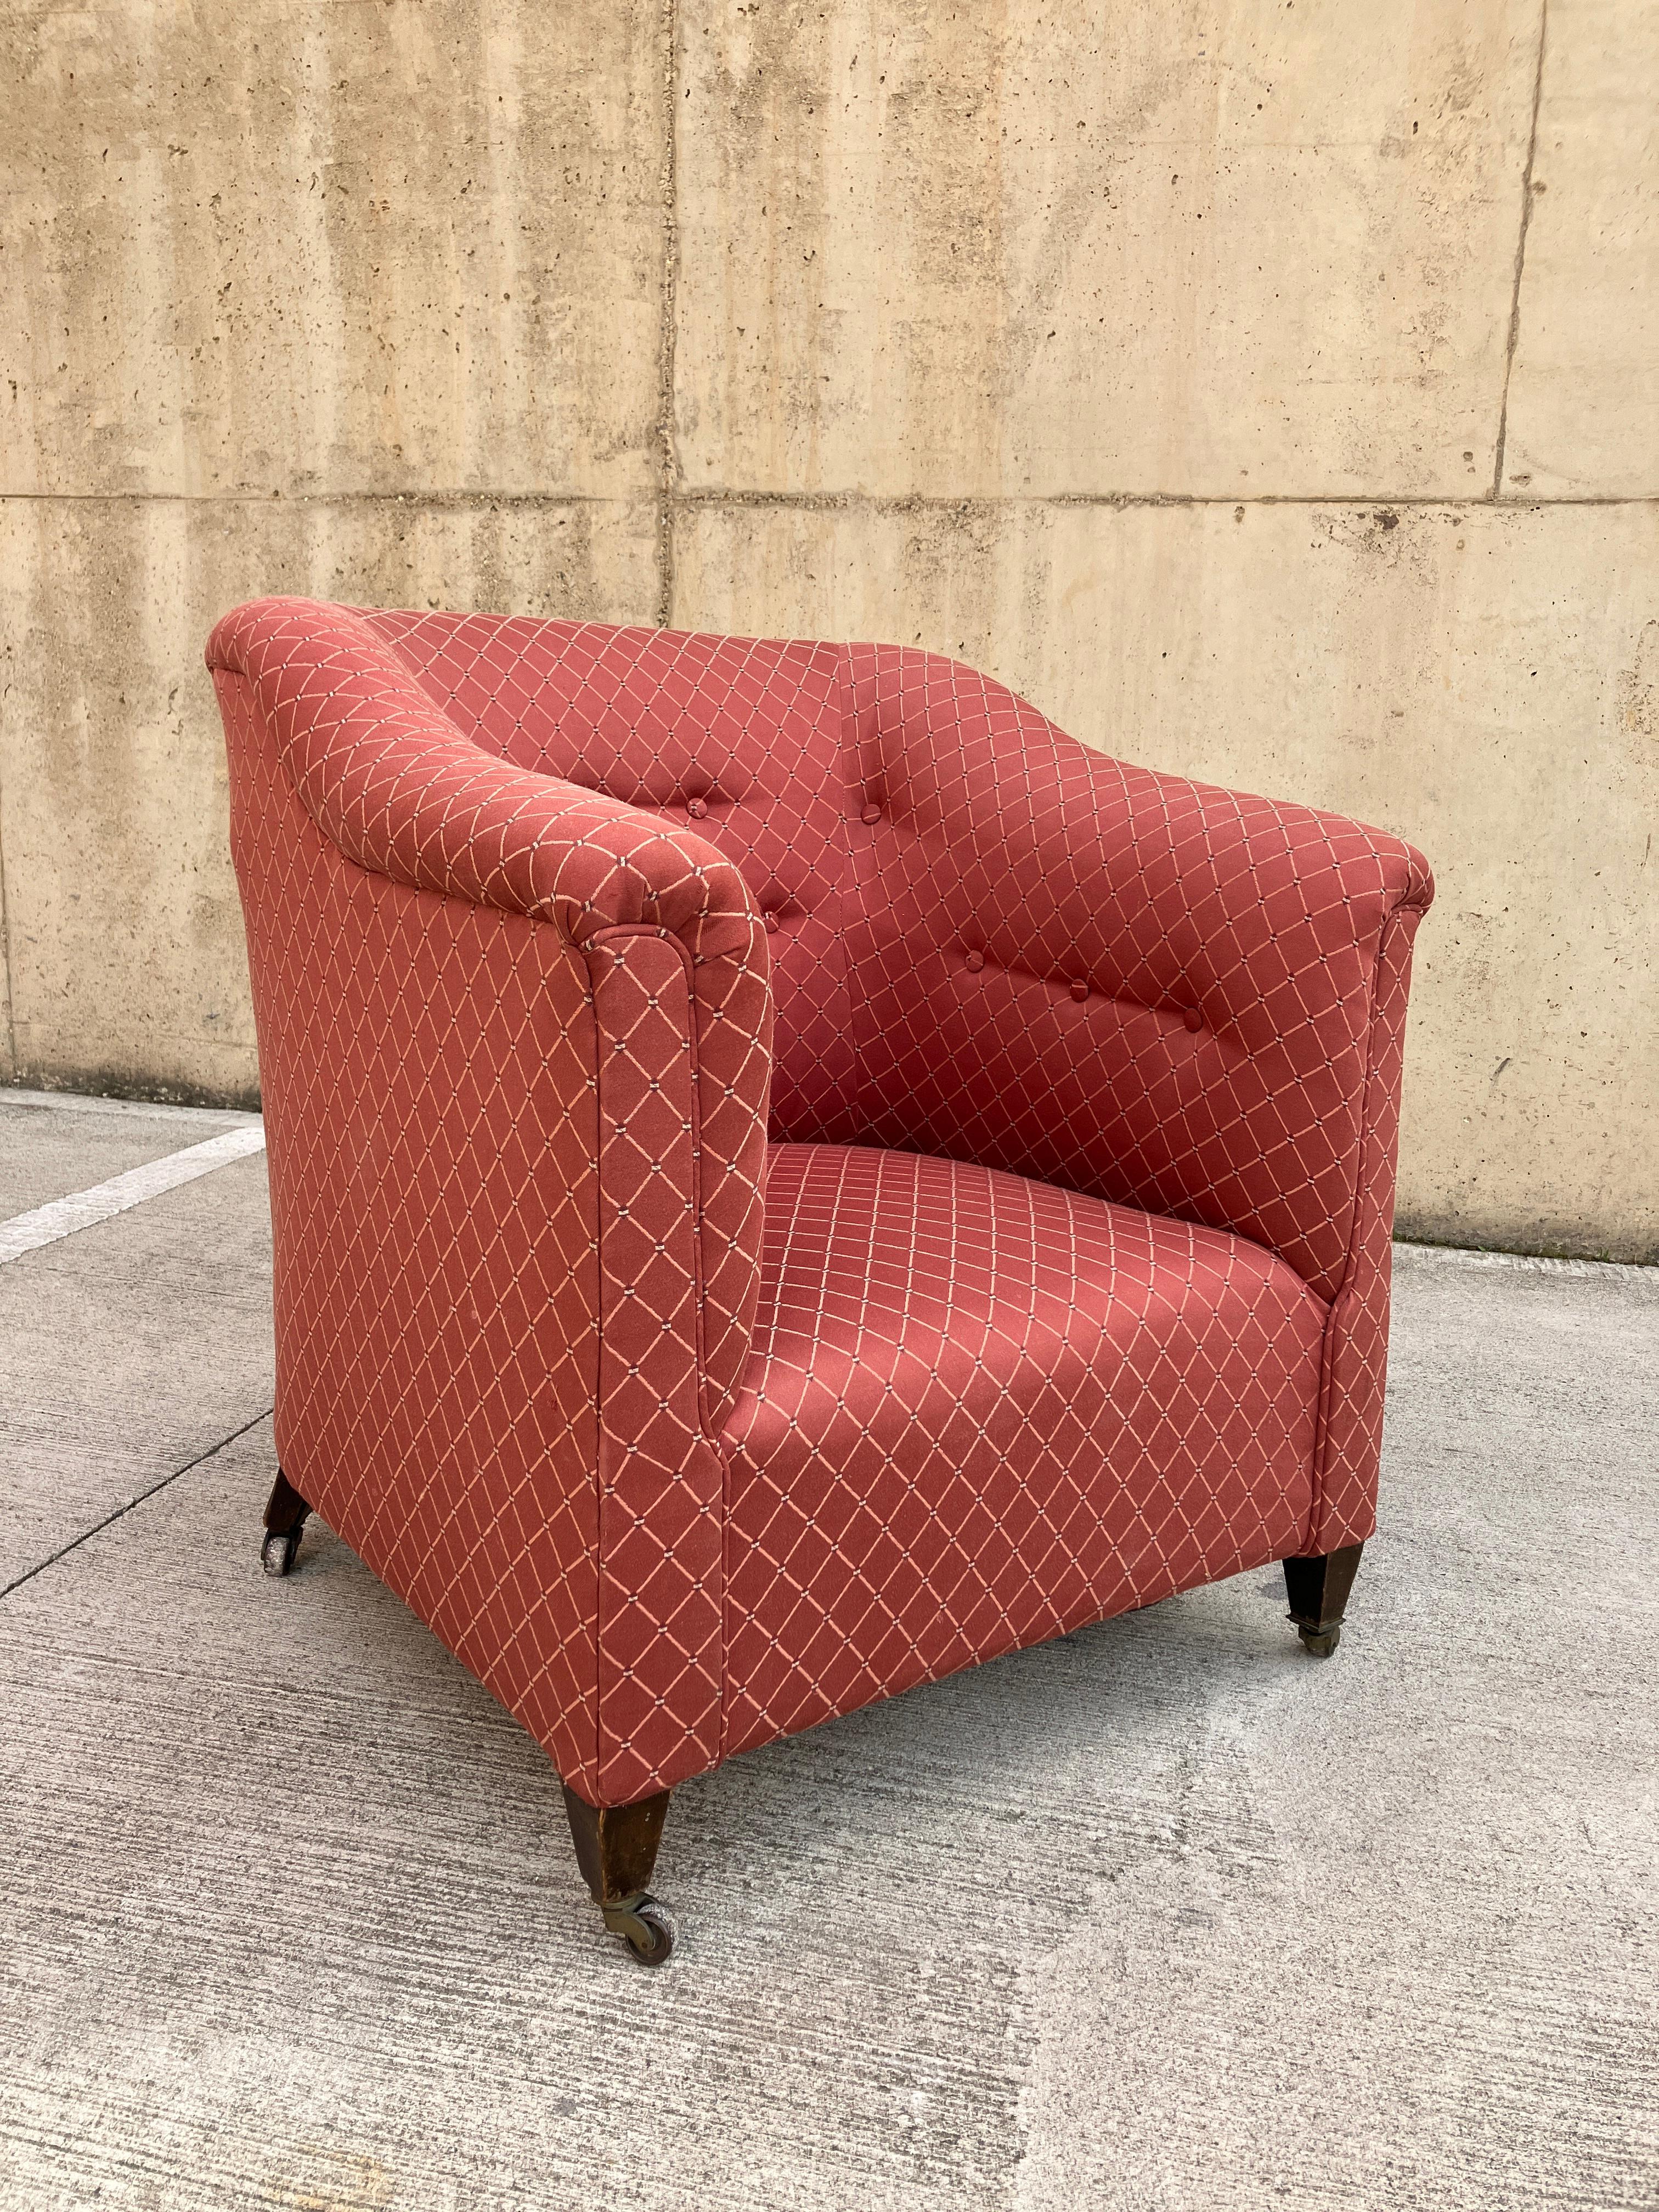 Dieser viktorianische Wannenstuhl hat eine wunderschöne Form und Größe und ist sehr bequem zu sitzen. Der Sessel hat kleine Rollen aus Mahagoniholz, so dass er leicht zu bewegen ist. 

Ziemlich neu attraktive dusky rosa Farbe saubere Polsterung.